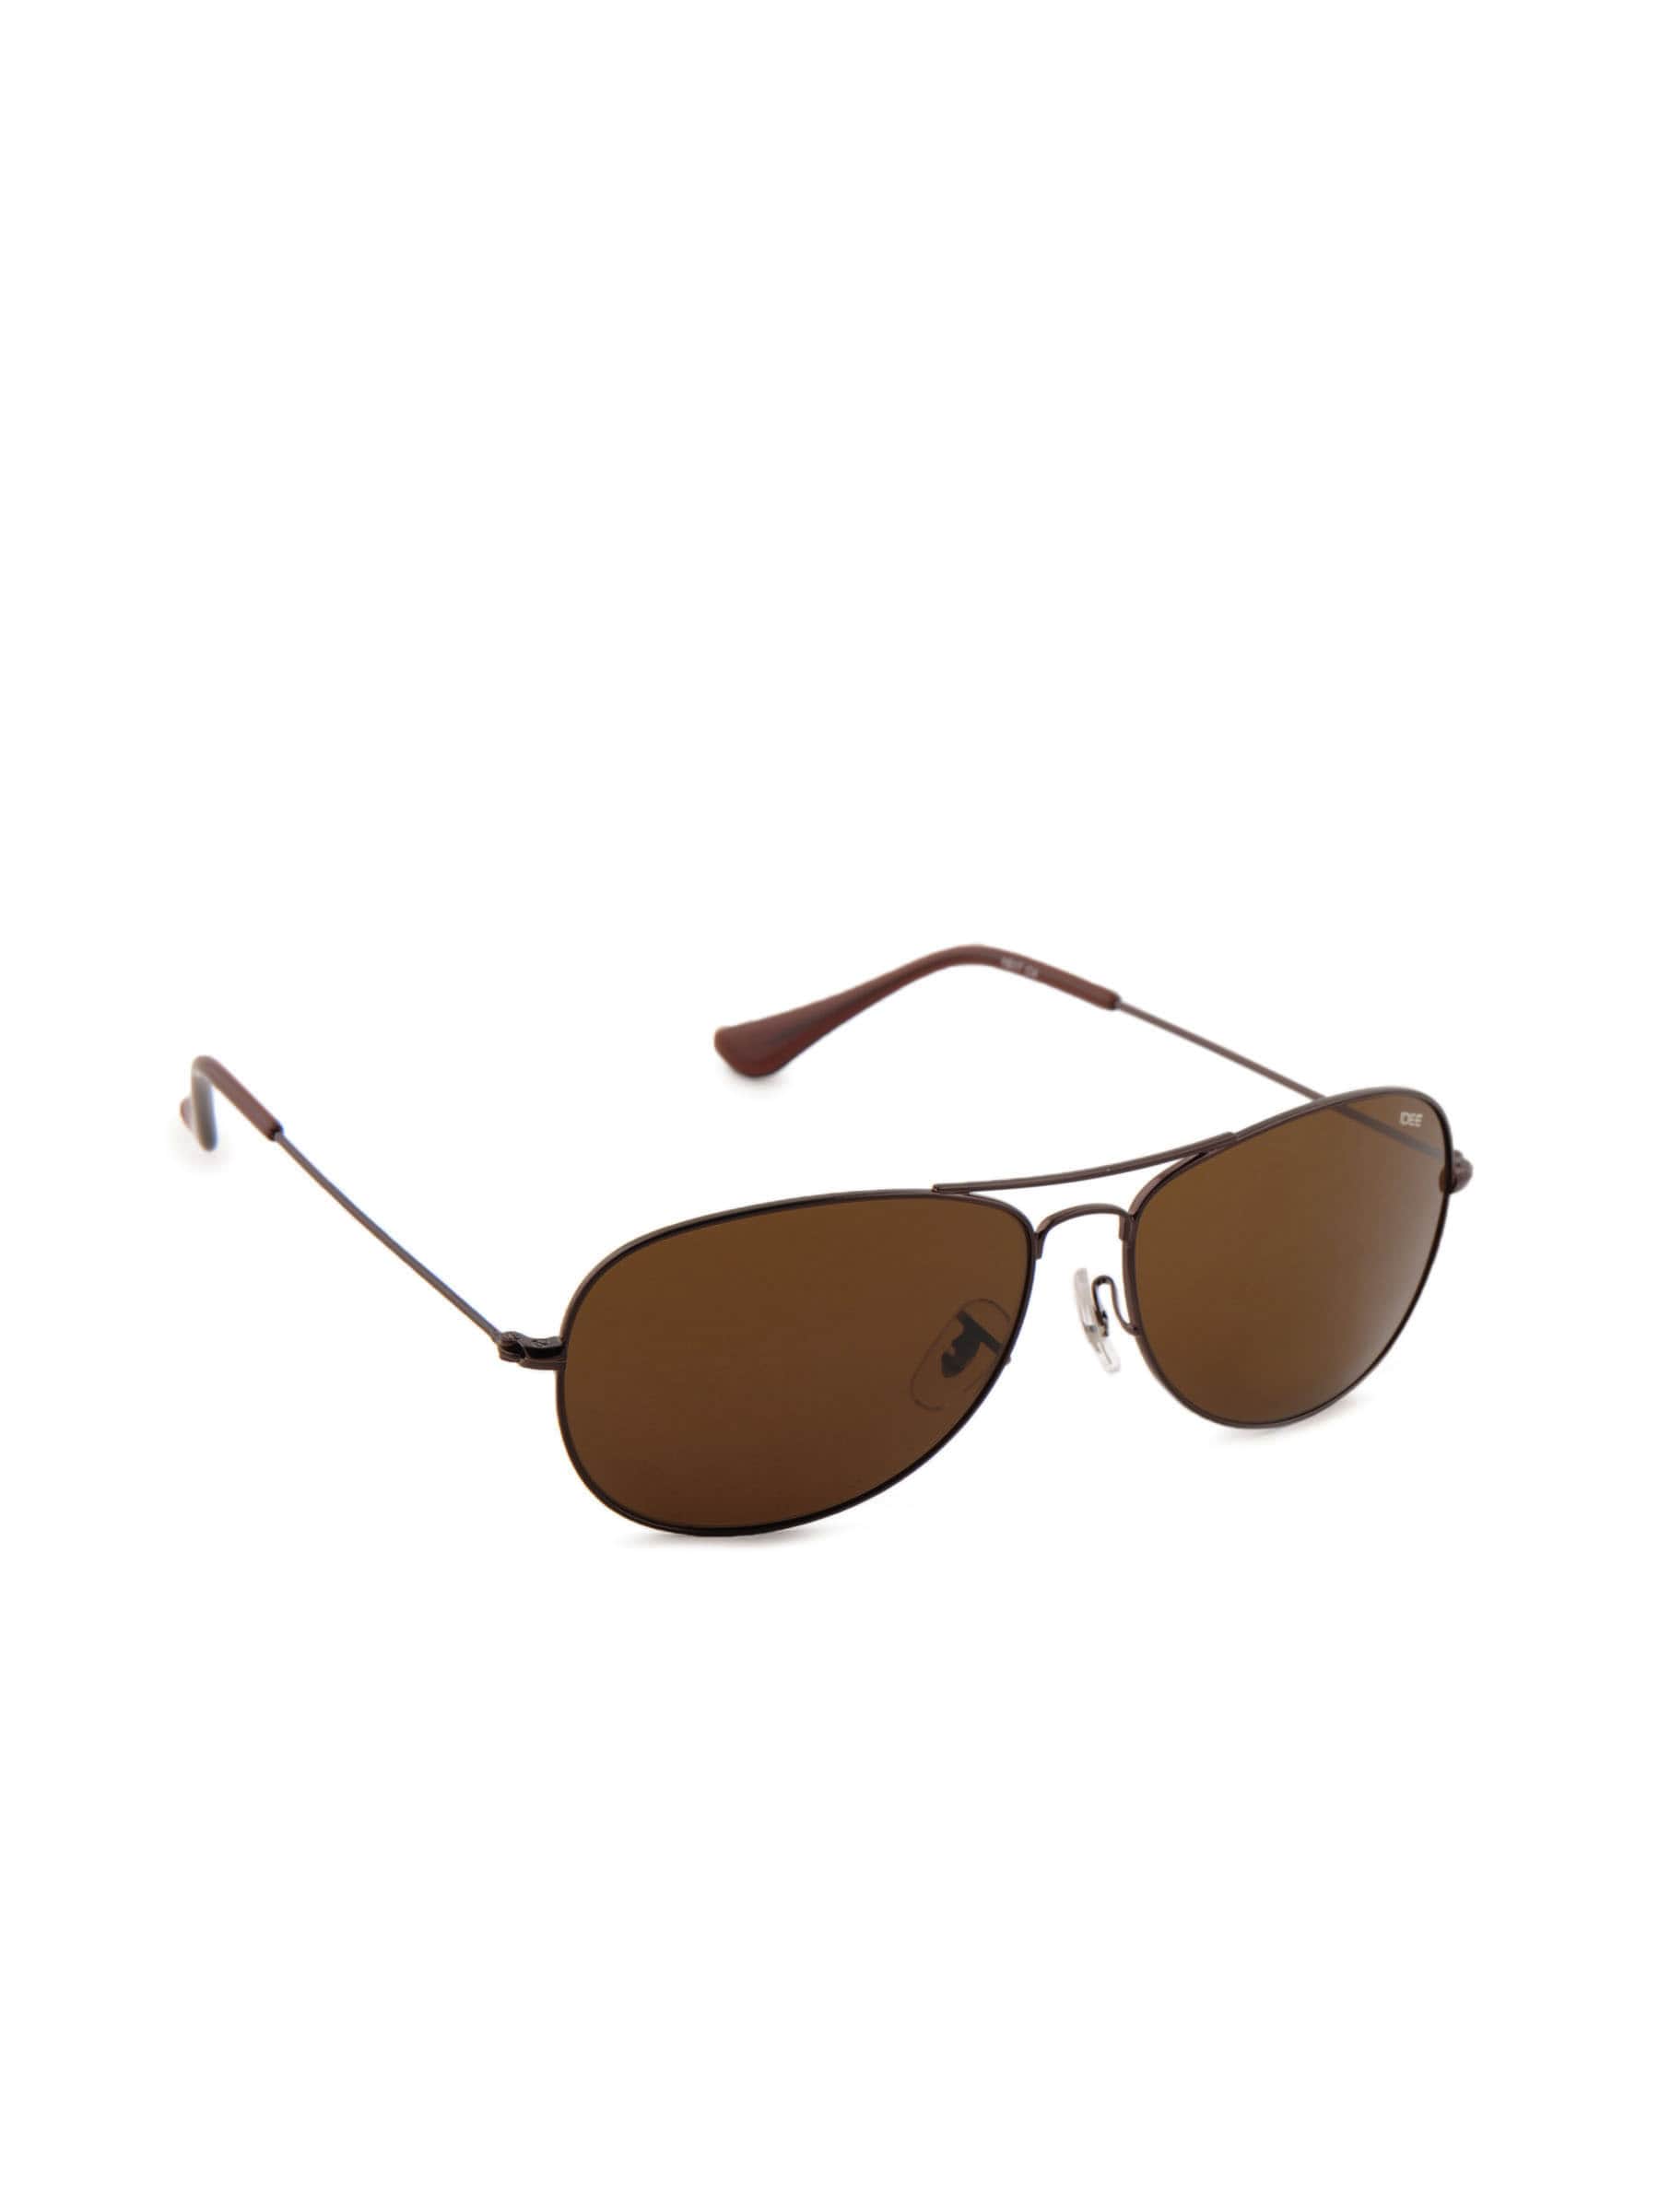 Idee Unisex Funky Eyewear Brown Sunglasses